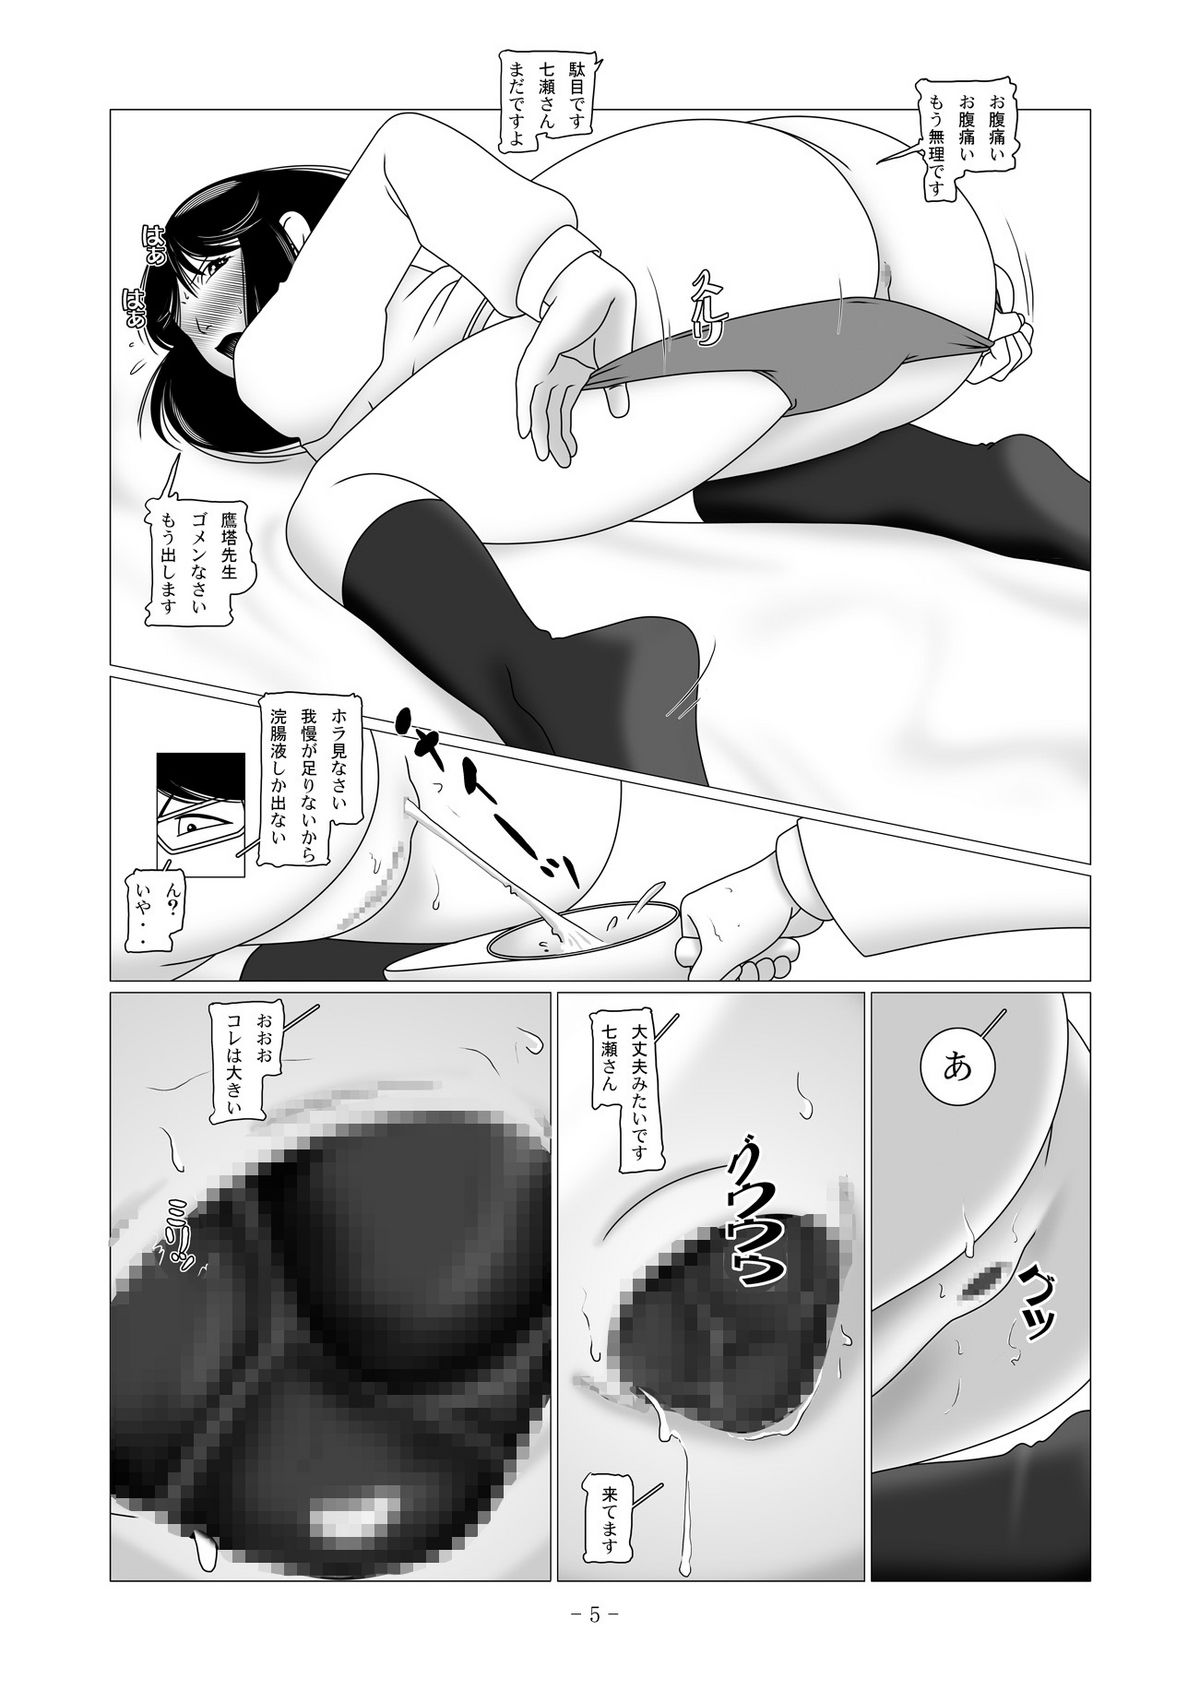 [nebira71] Nanase Miyuki no Choukyoubo File 02 - Koumon Kakuchou Dappun Hen (Kindaichi Shounen no Jikenbo) page 17 full